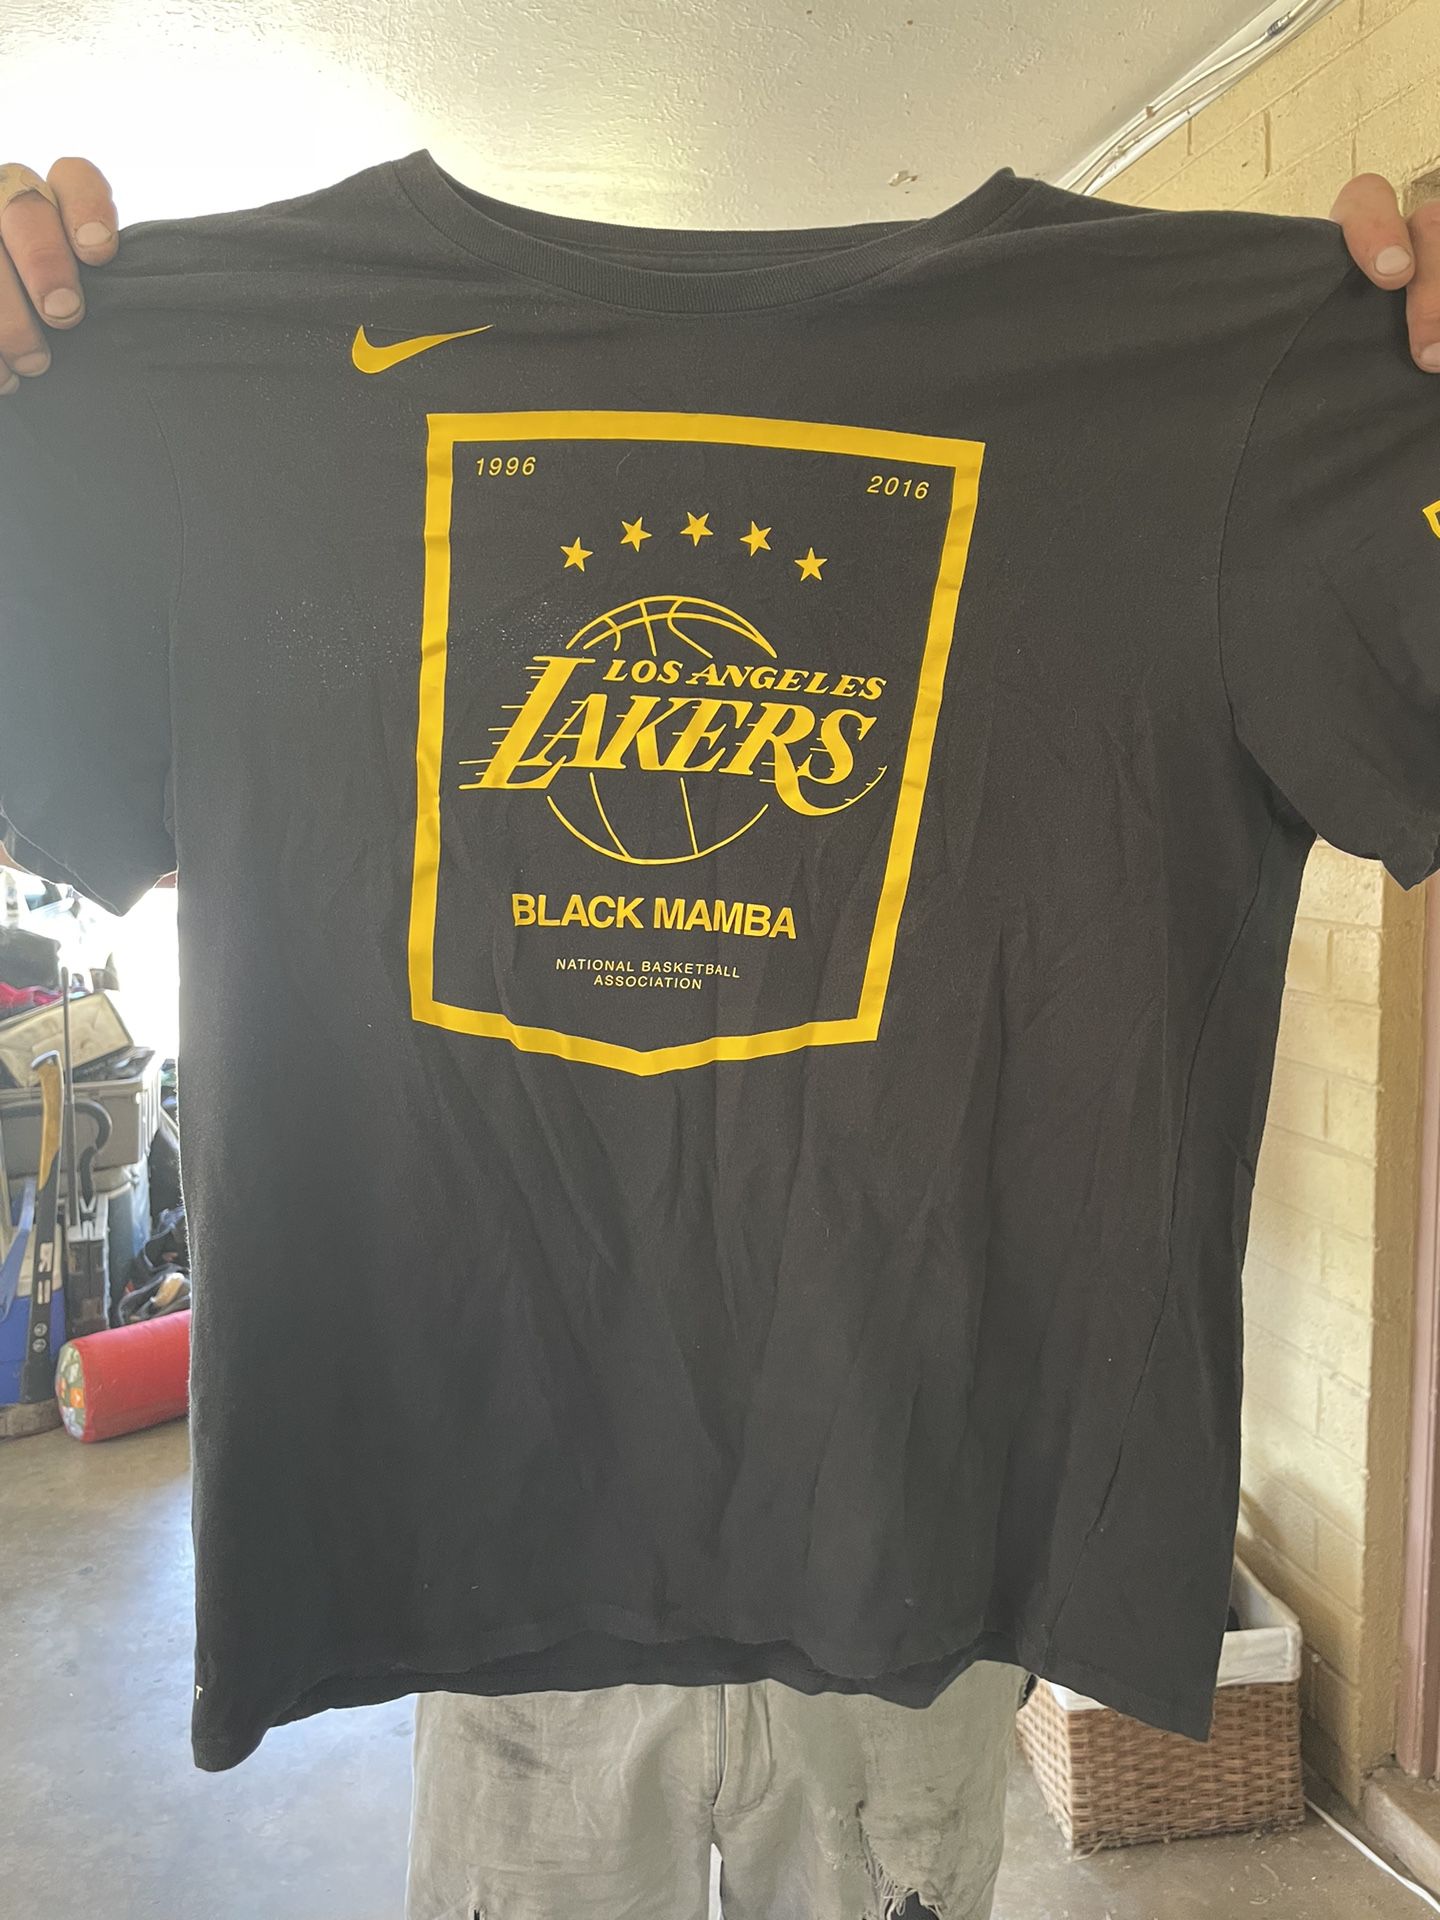 Authentic Nike Black Mamba Tshirt